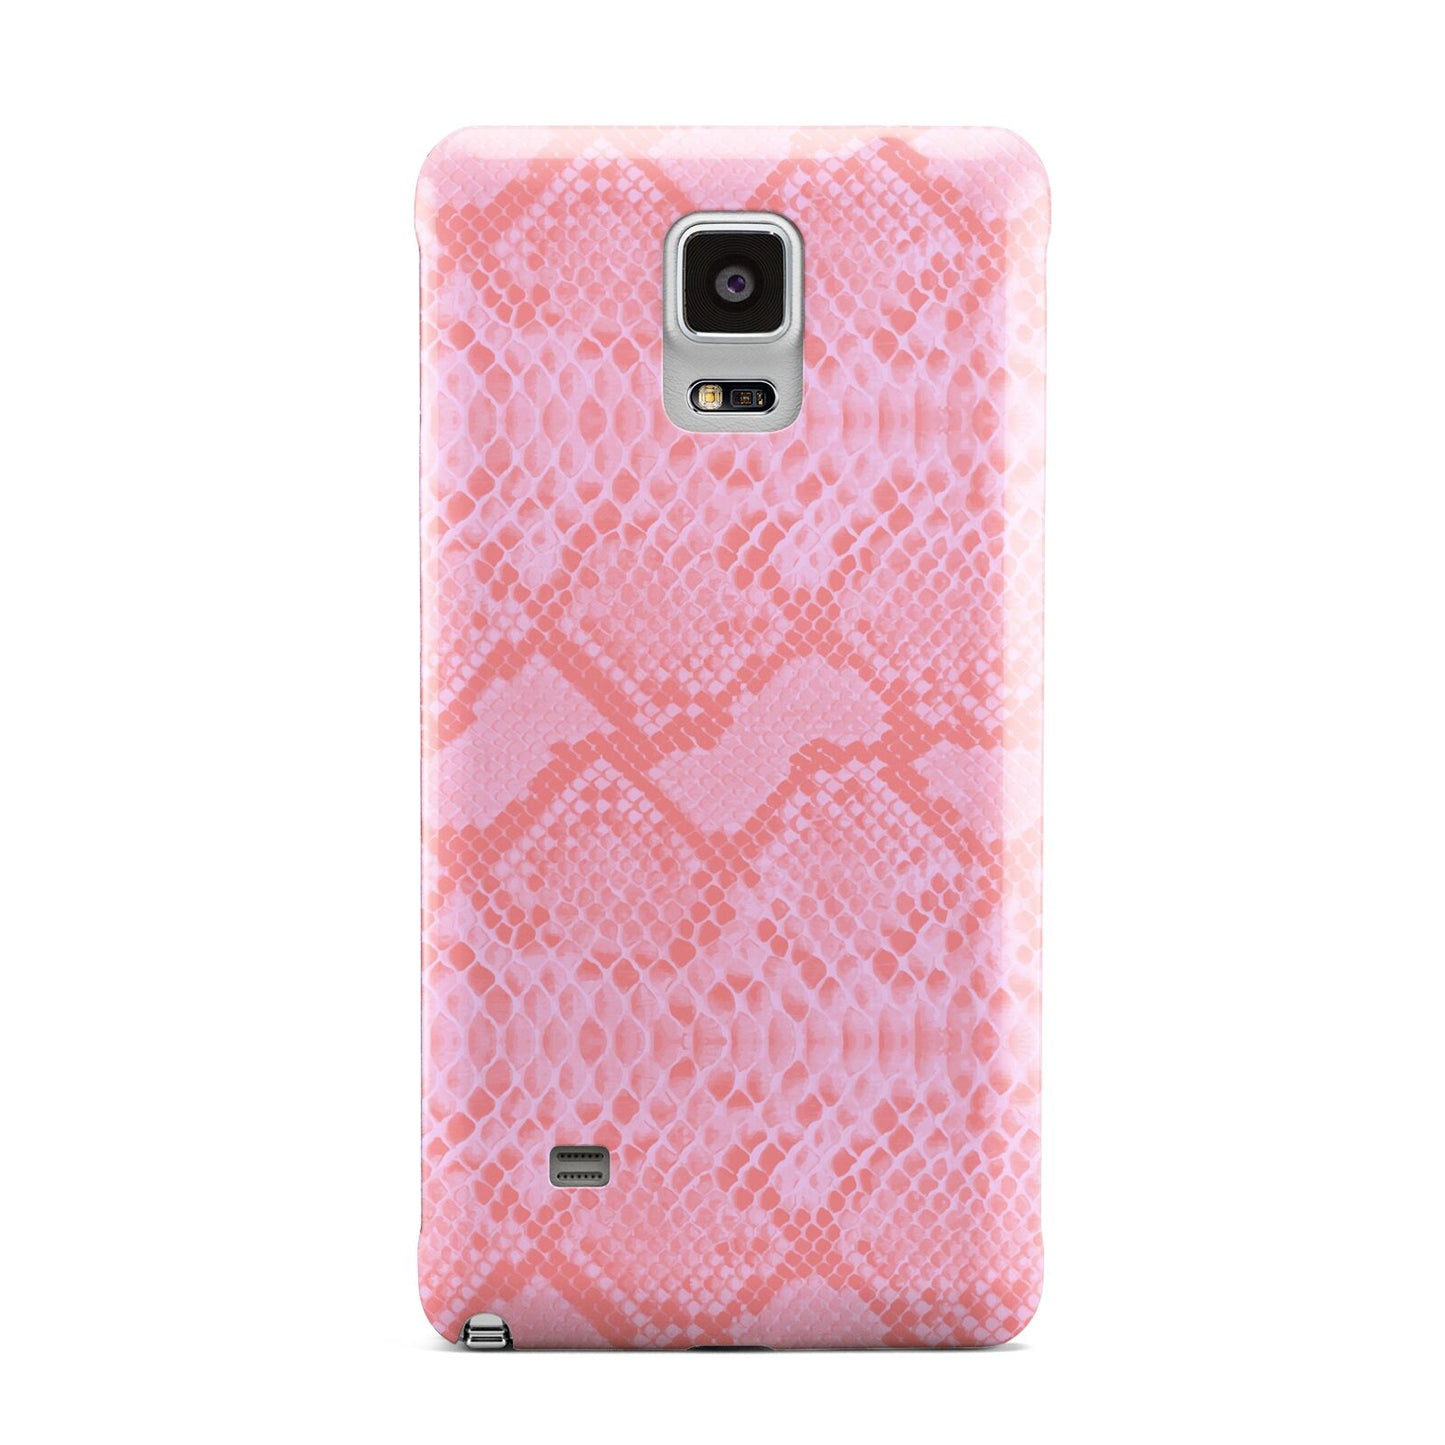 Pink Snakeskin Samsung Galaxy Note 4 Case